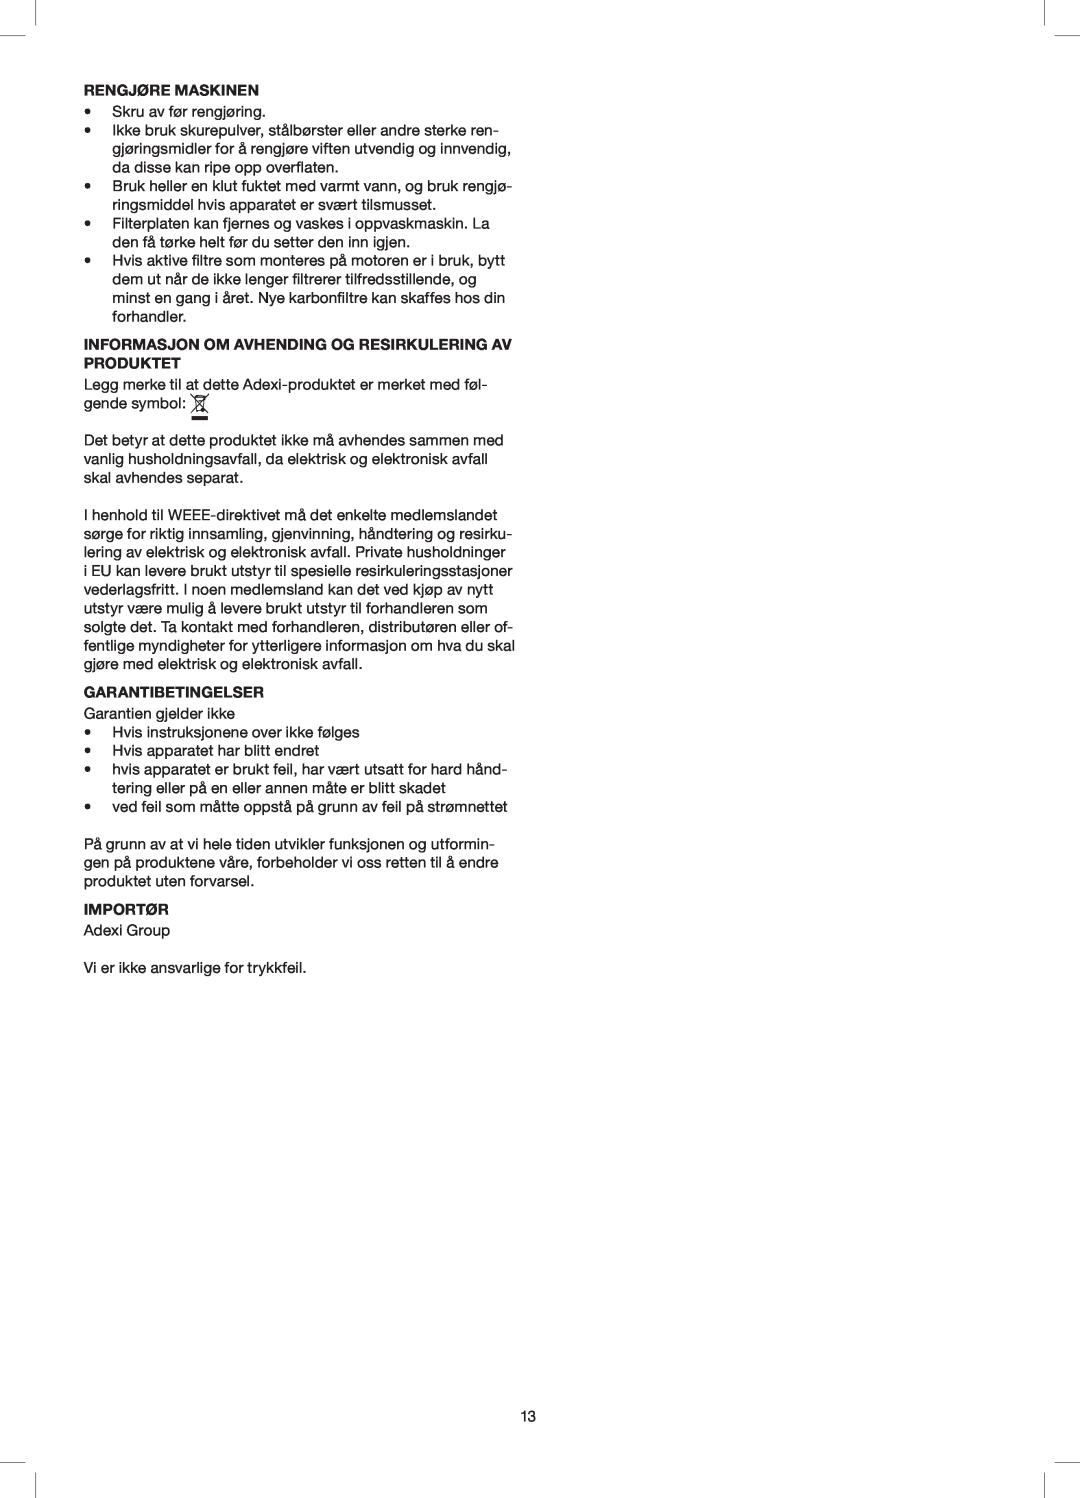 Melissa 258-014 Rengjøre Maskinen, Informasjon Om Avhending Og Resirkulering Av Produktet, Garantibetingelser, Importør 